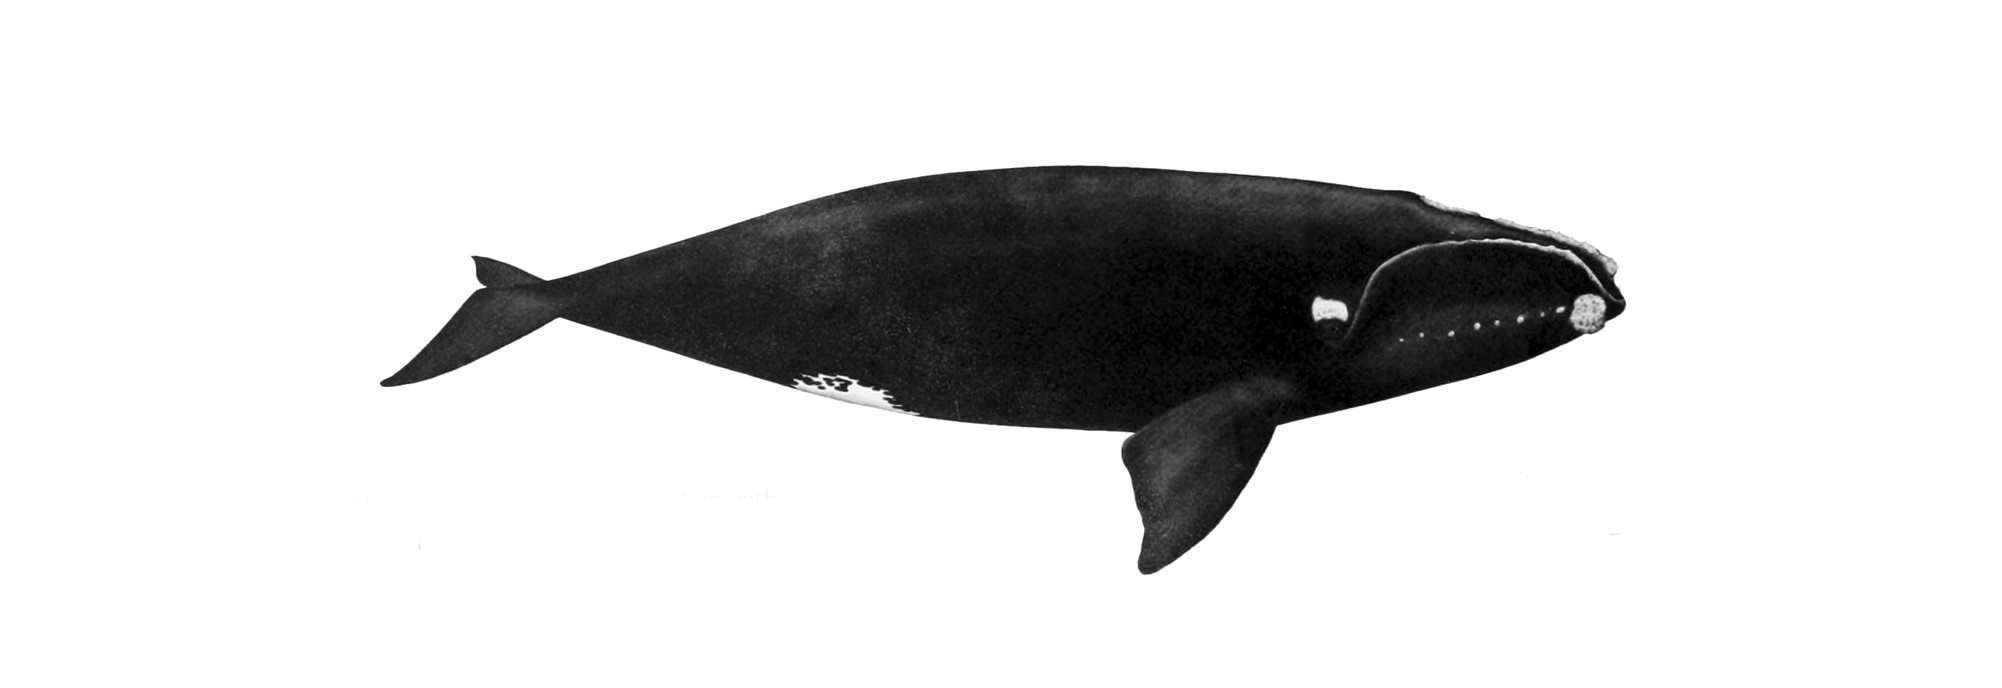 La première baleine noire de l’année arrive dans le golfe du Saint-Laurent